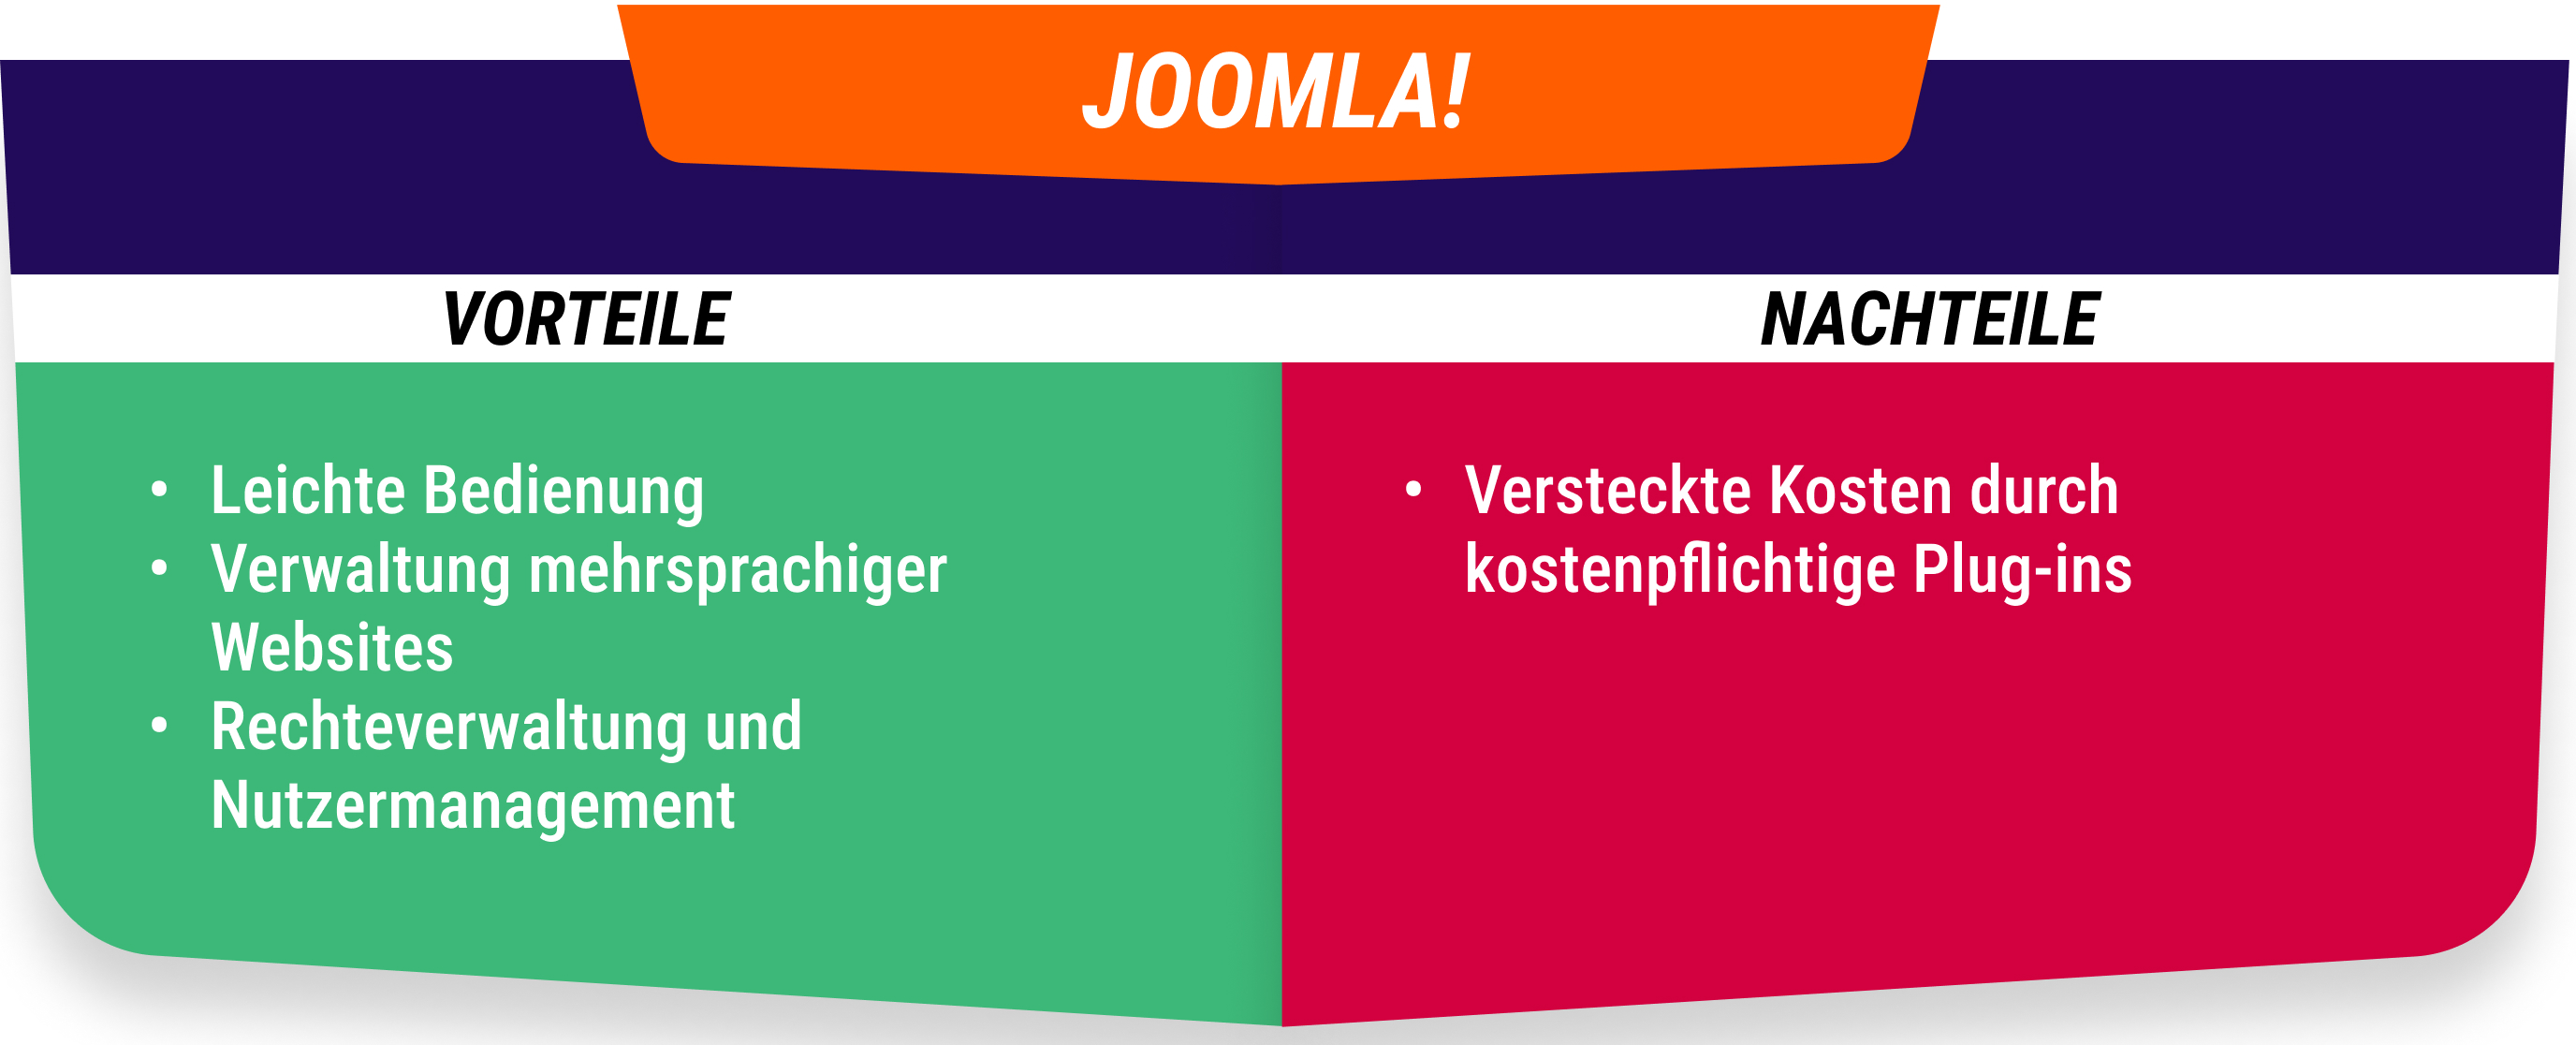 Vorteile und Nachteile von Joomla!